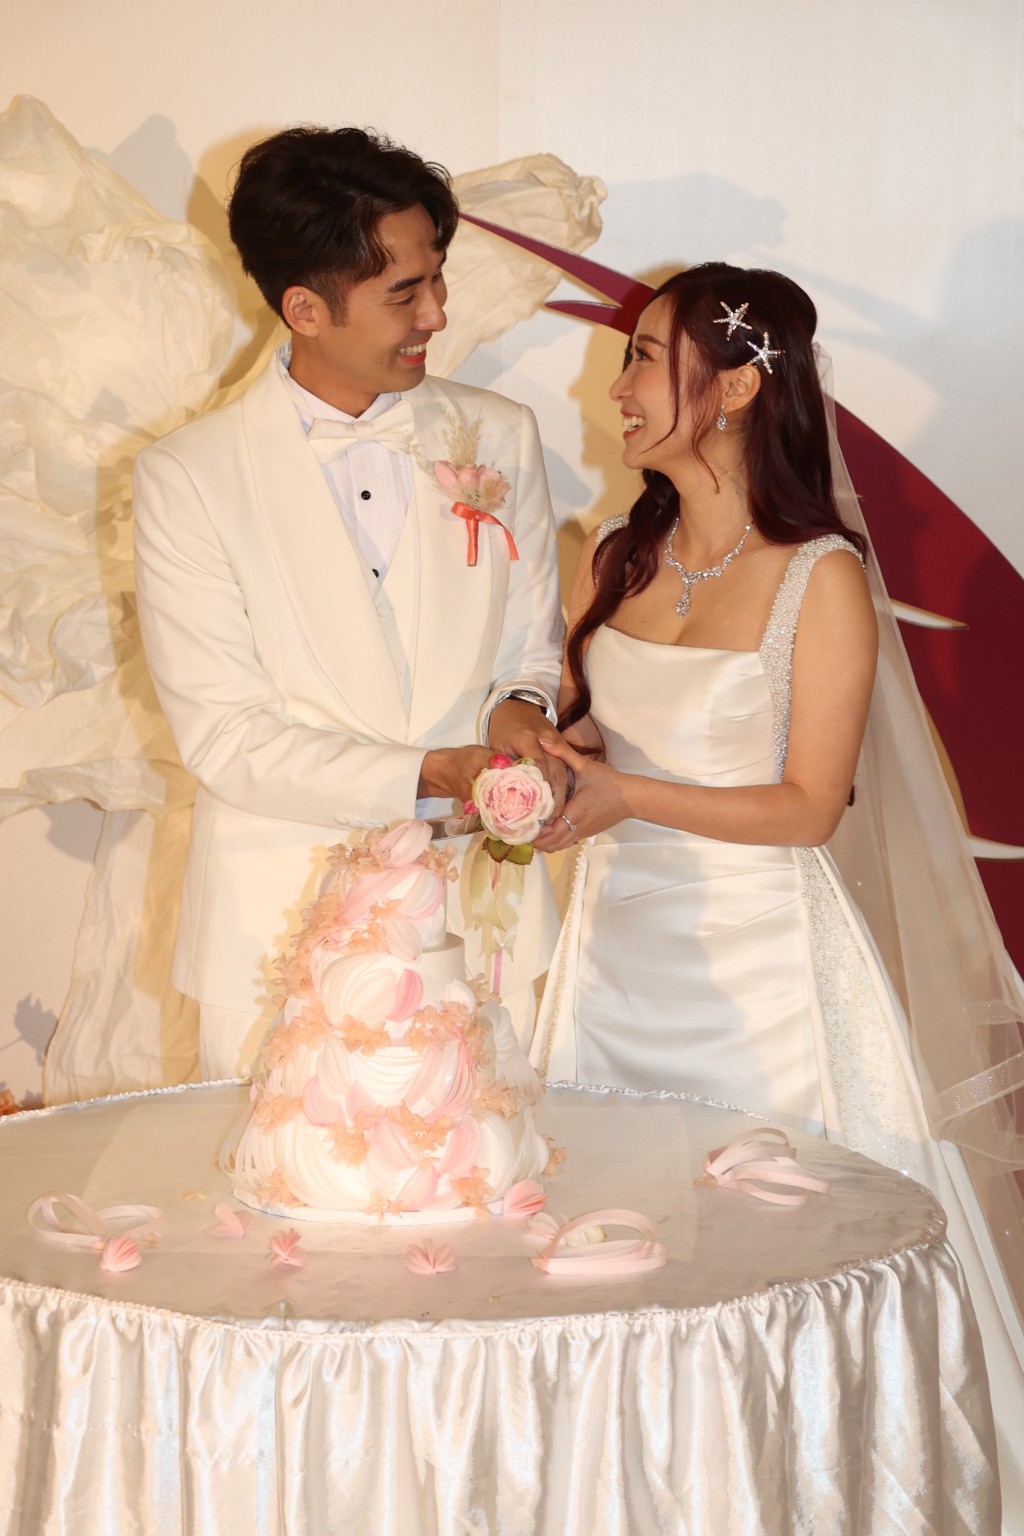 童星出身的黃美棋與男友鍾健威去年宣布結婚，4月6日假西貢五星級酒店WH HOTEL舉行婚禮，筵開35席大宴親朋。